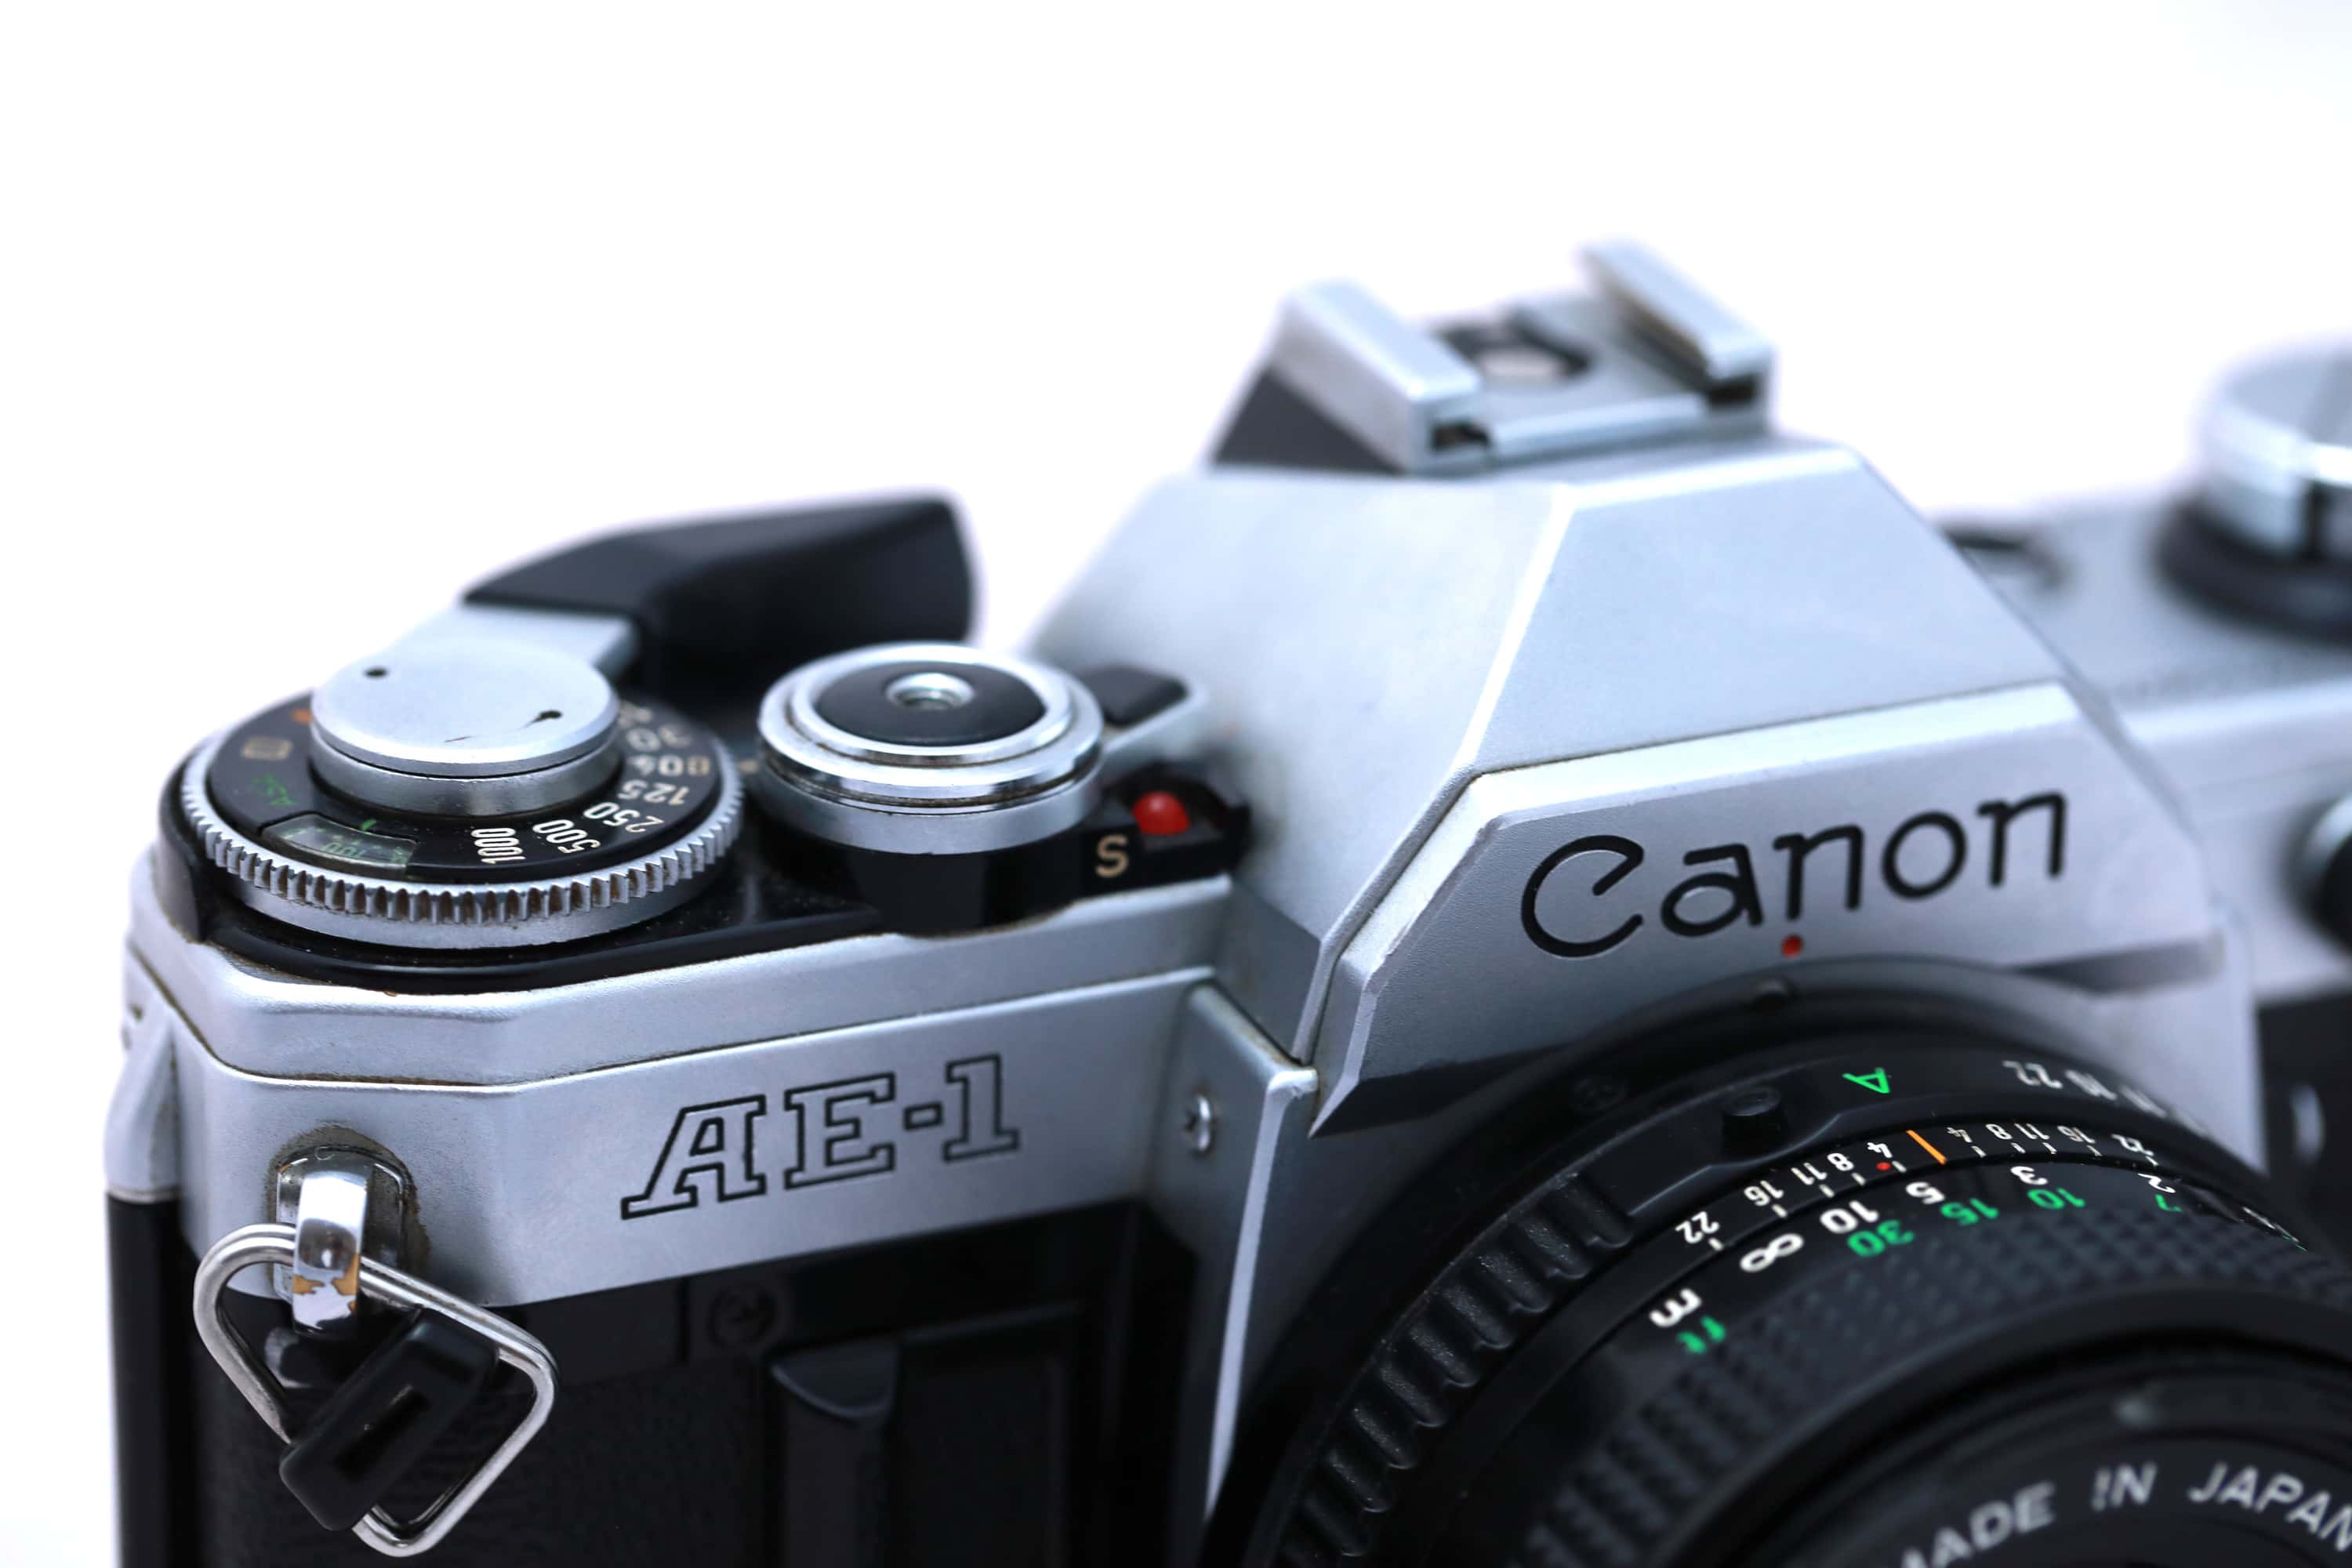 Canon AE1